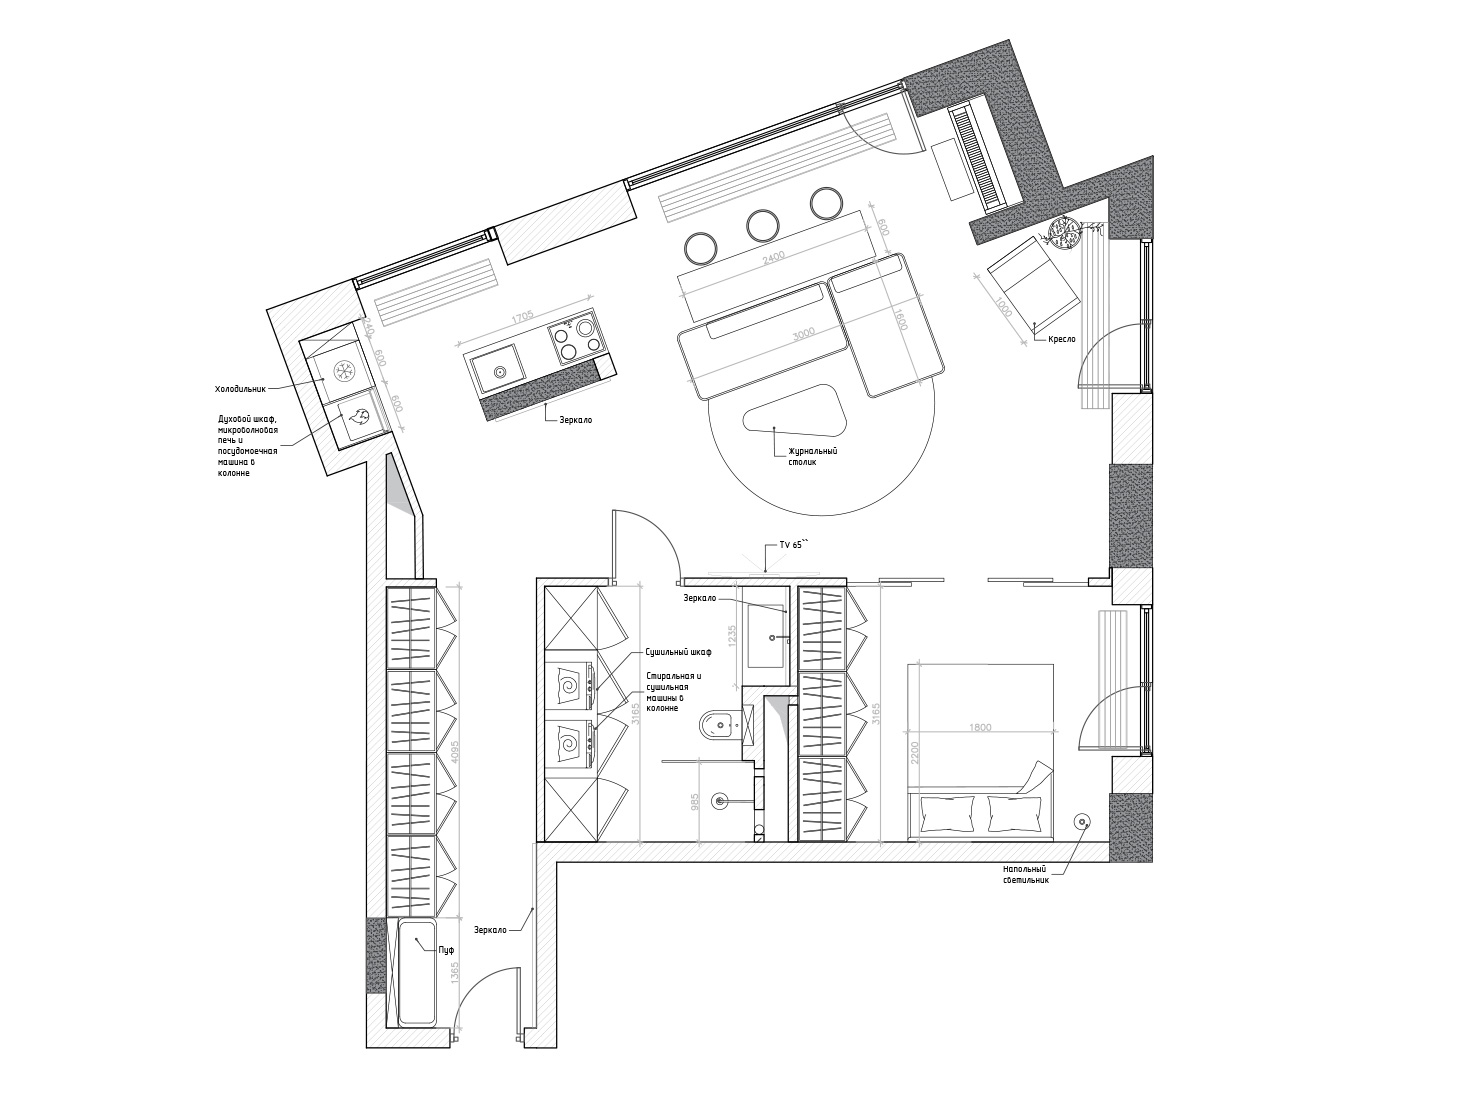 Doronina Design,公寓設計,公寓設計案例,75㎡,微水泥,小公寓,小公寓設計效果圖,小戶型設計,莫斯科